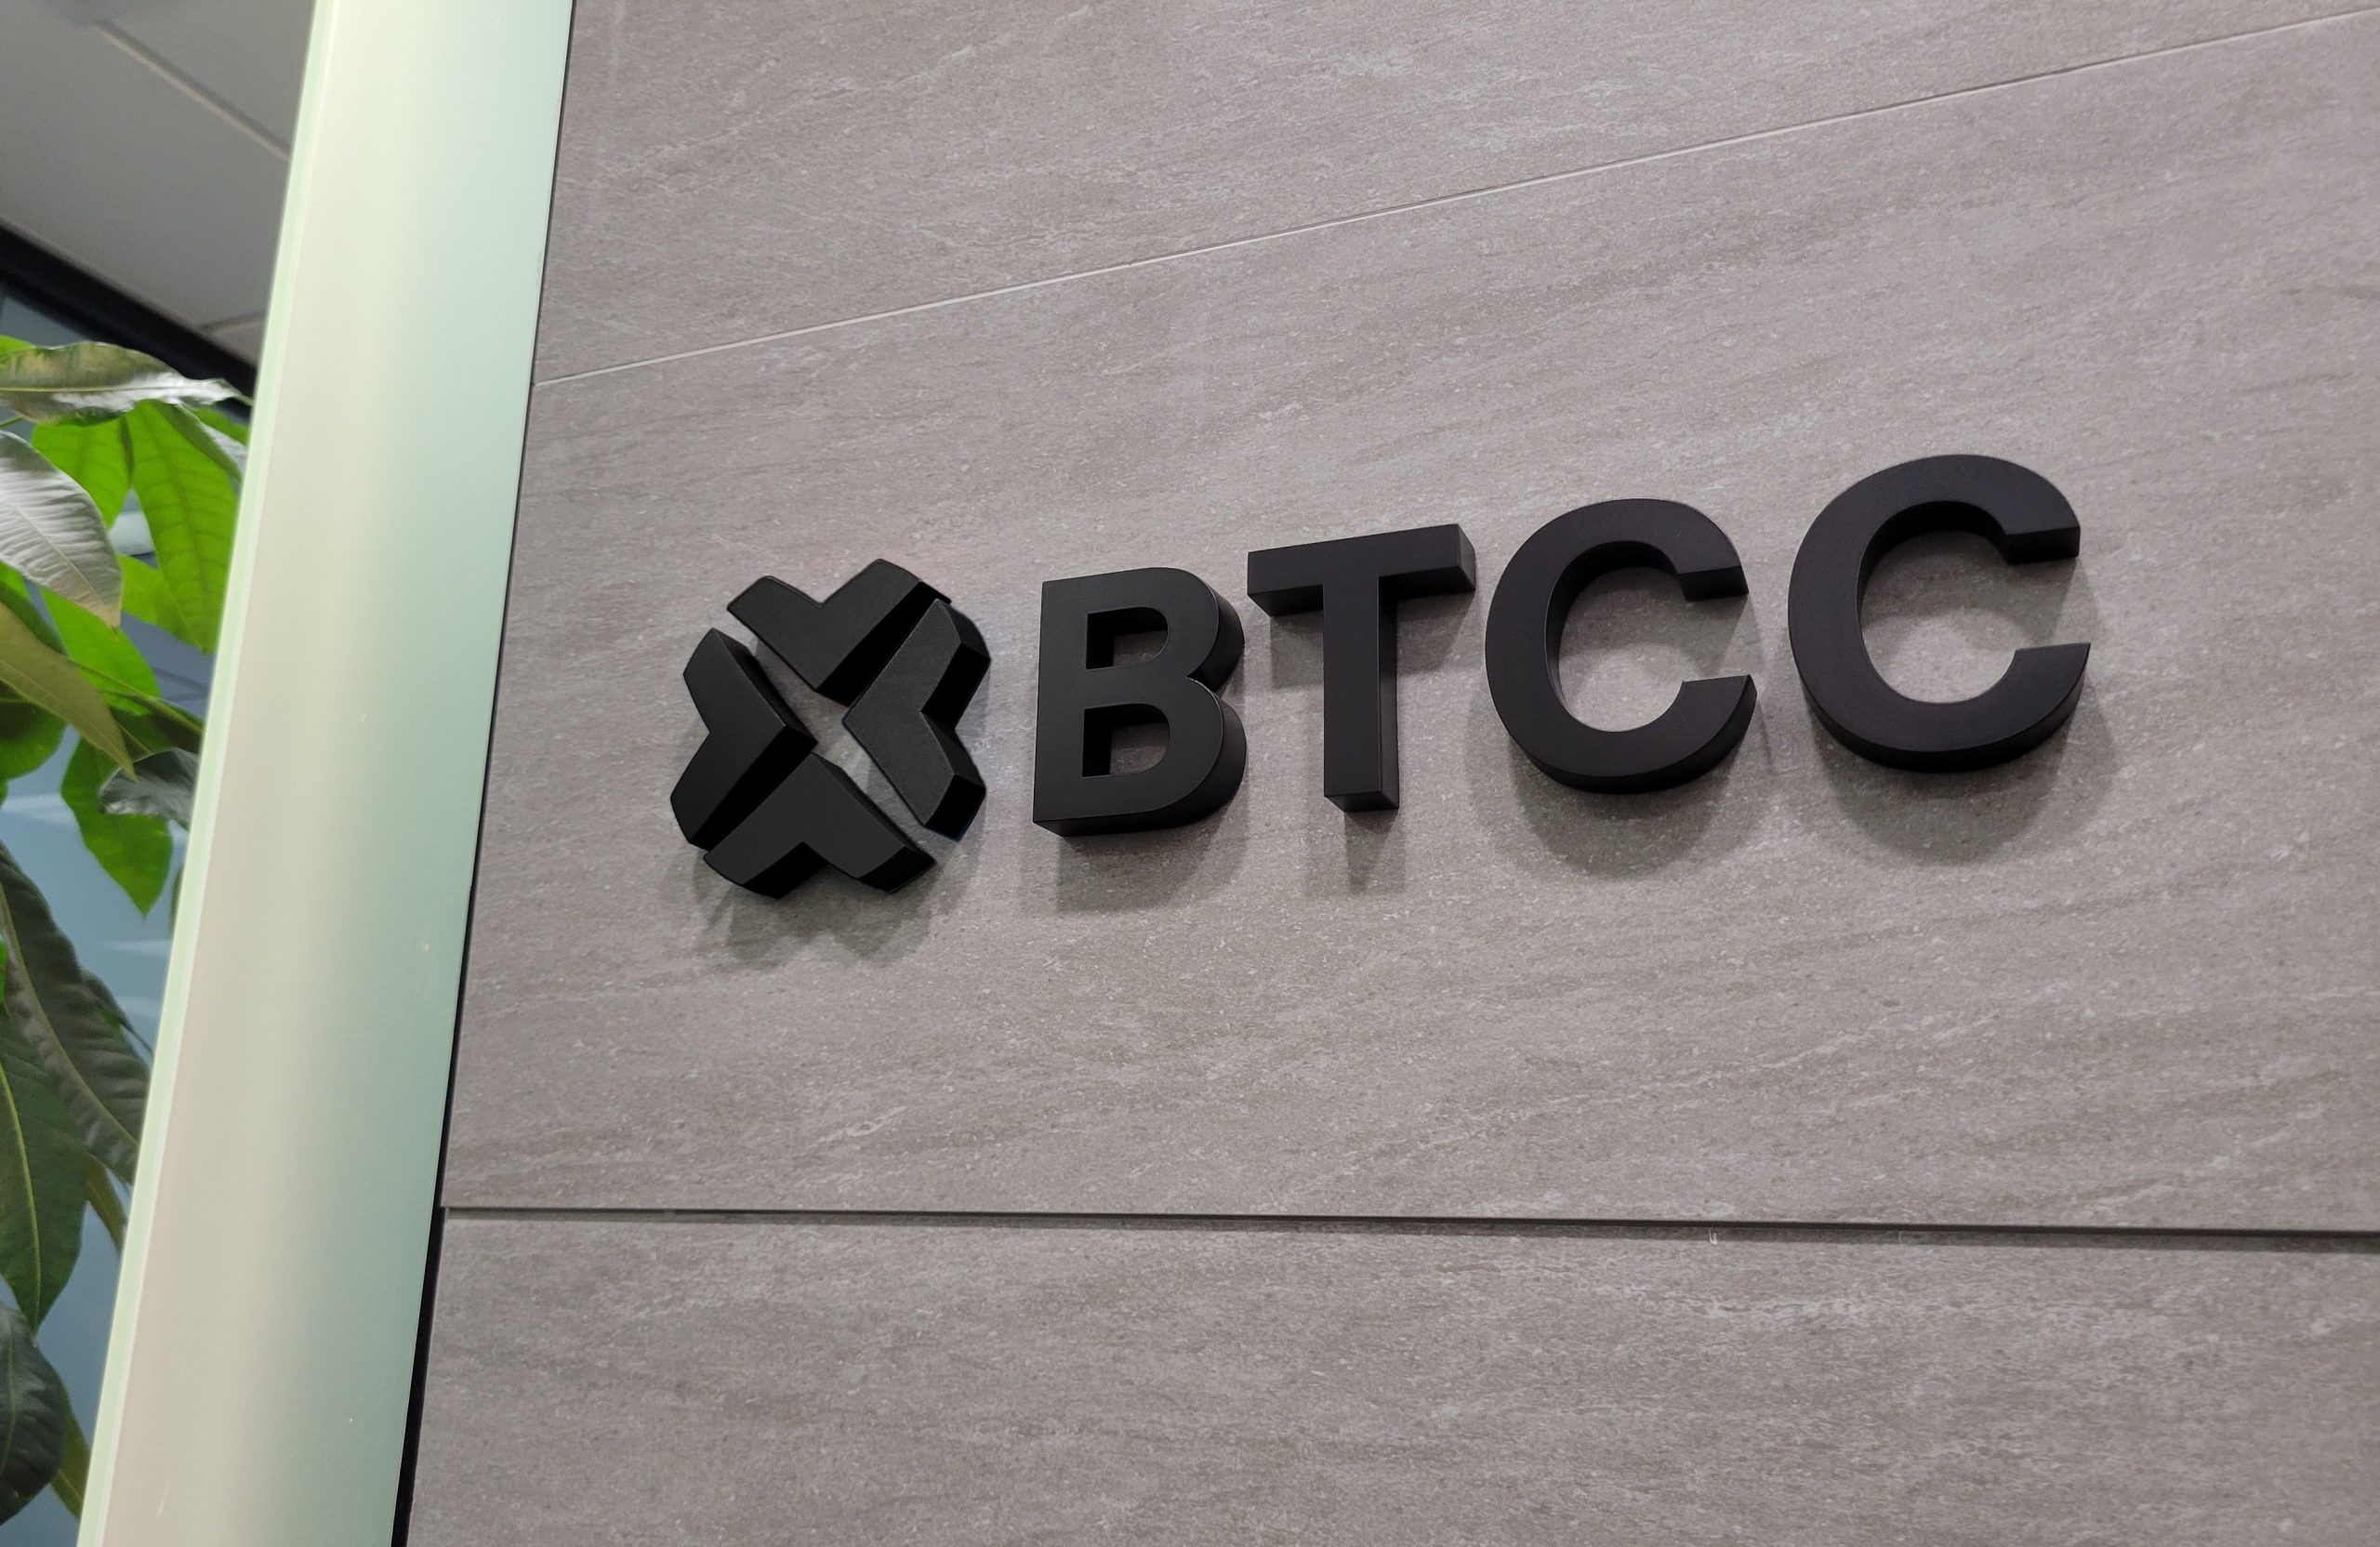 BTCCは仮想通貨のデリバティブ取引に特化した取引所